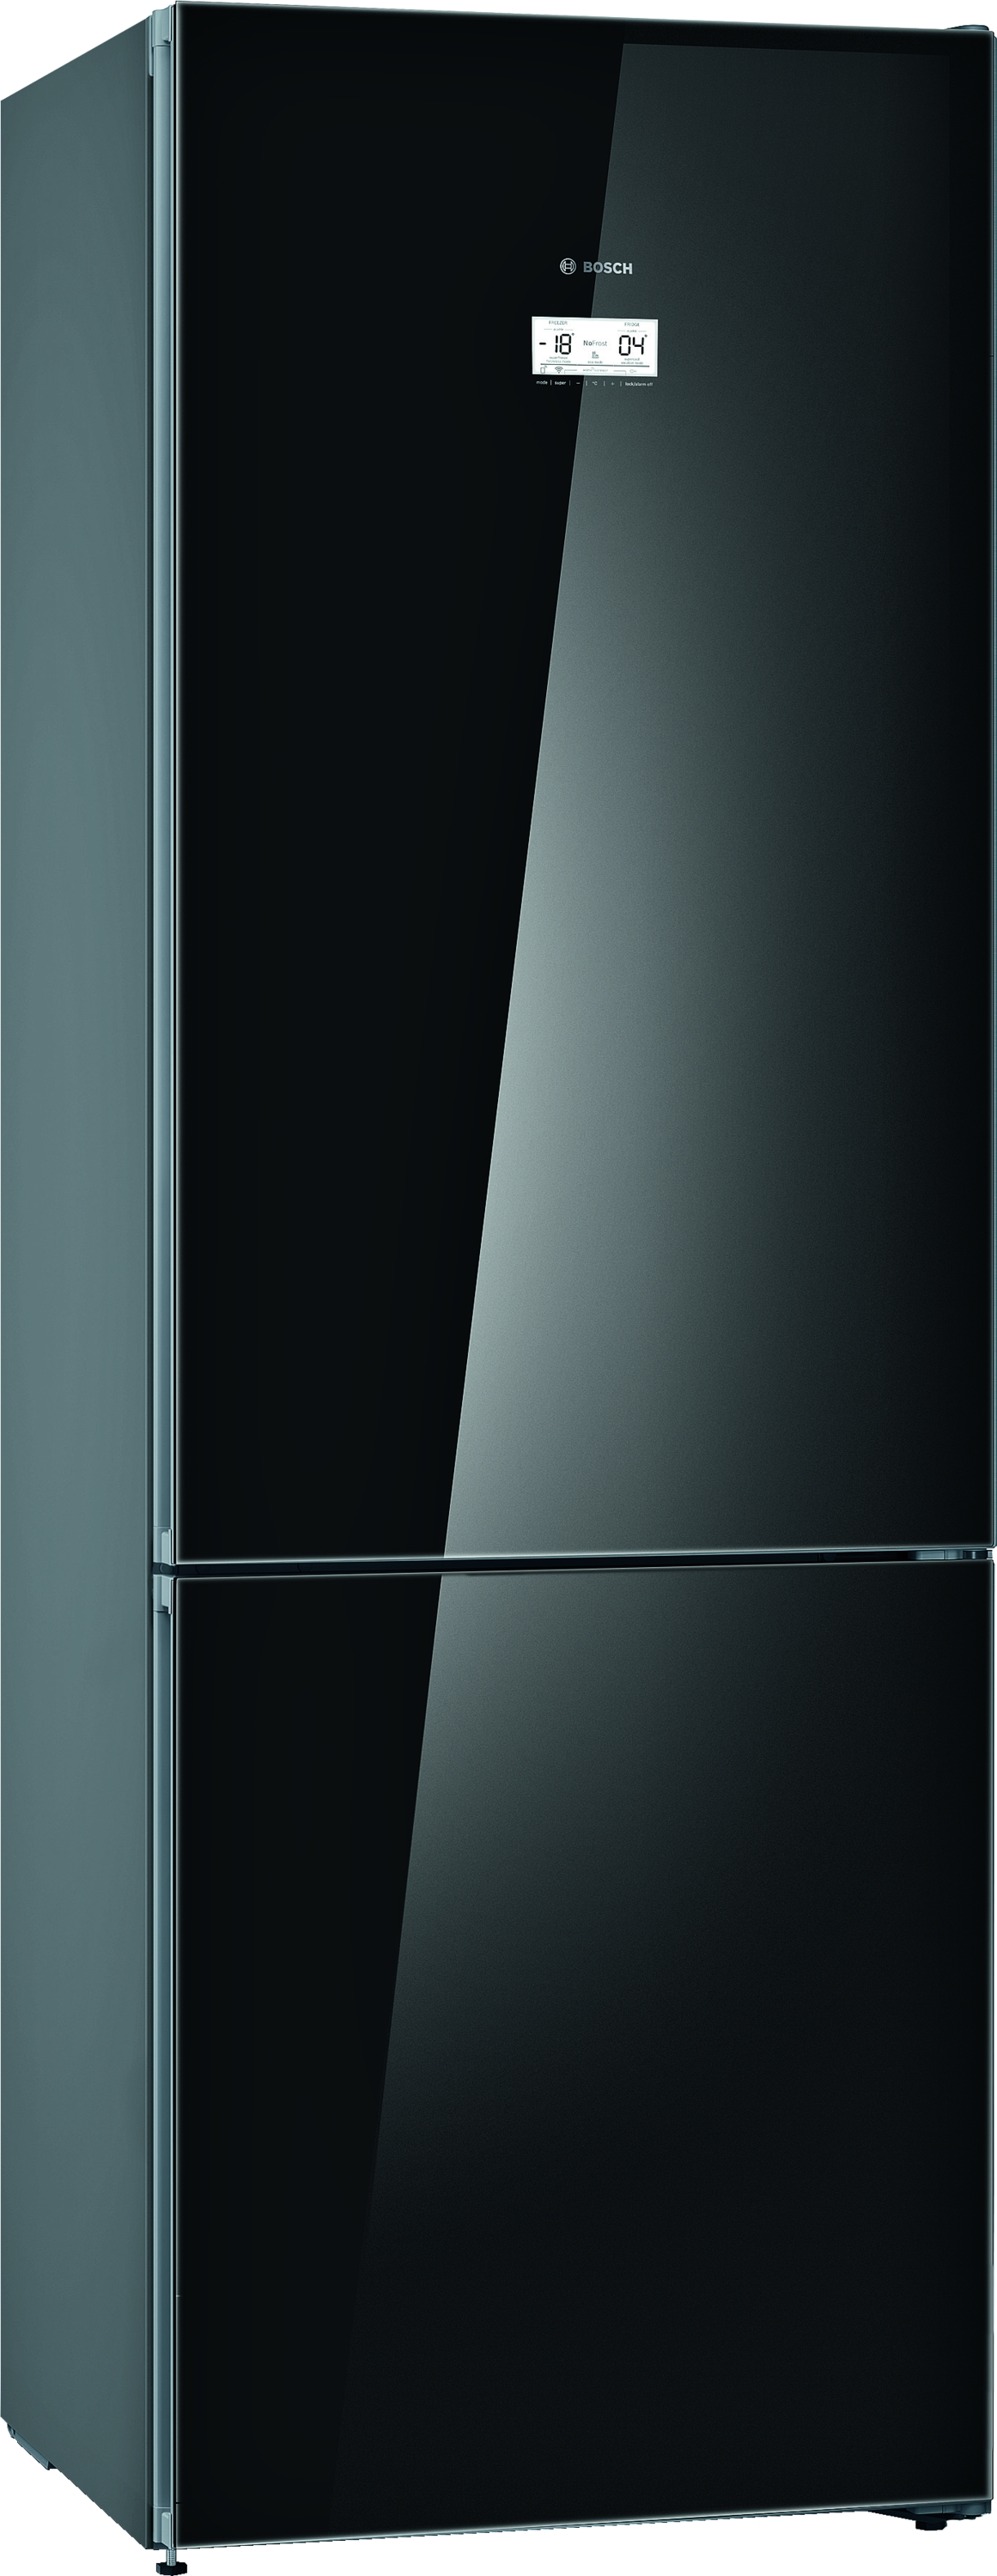 KGN49LBEA, Samostojeći frižider sa zamrzivačem dole, staklena vrata